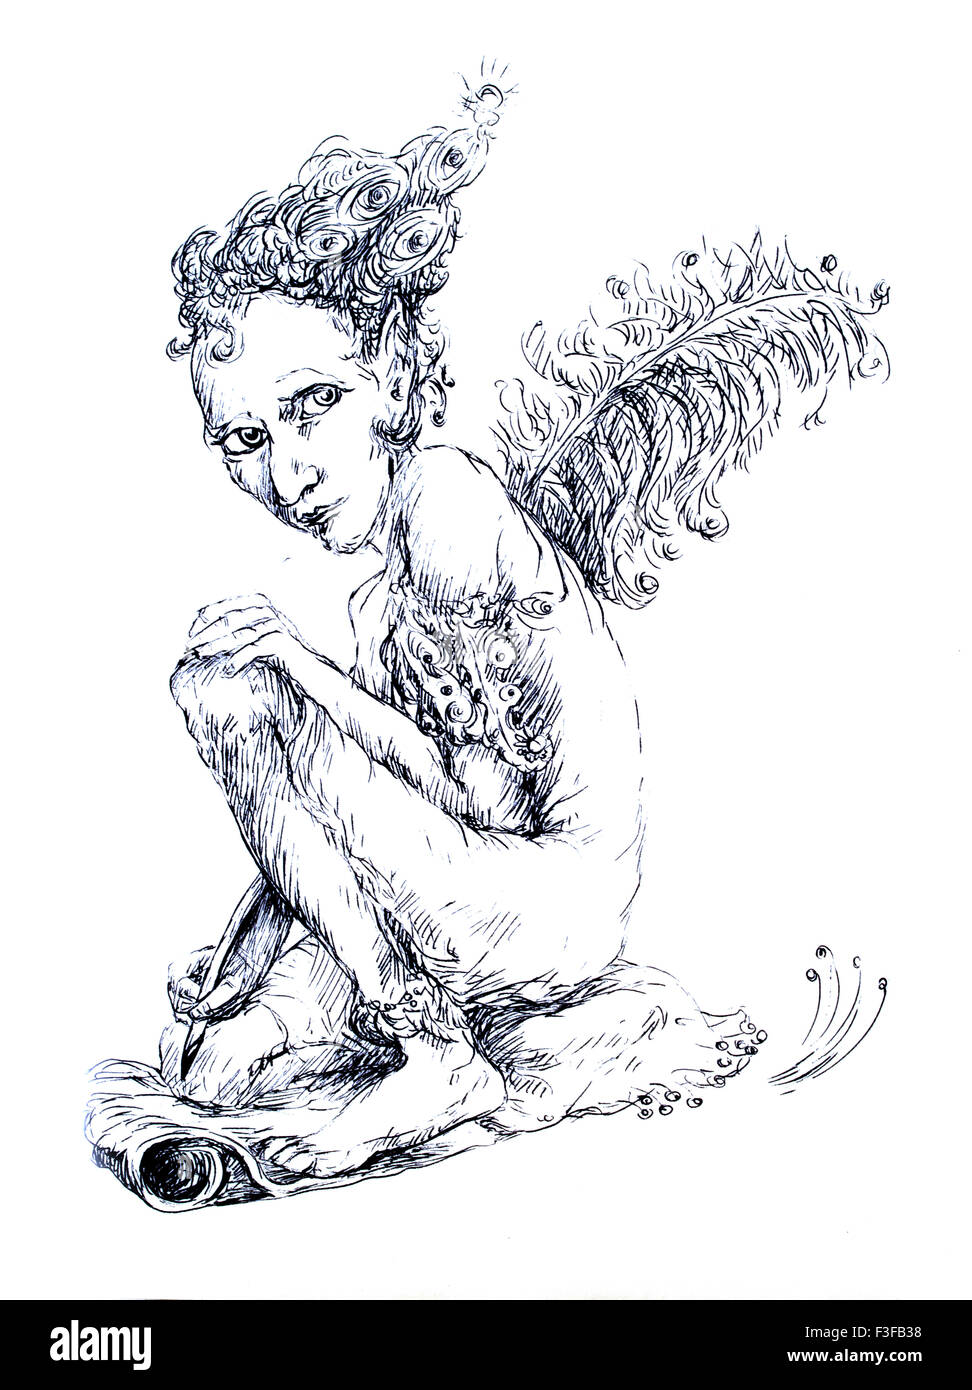 Beau dessin d'ornement linéaire détaillée d'une créature elfique comme un écrivain magique avec une plume d'autruche Banque D'Images